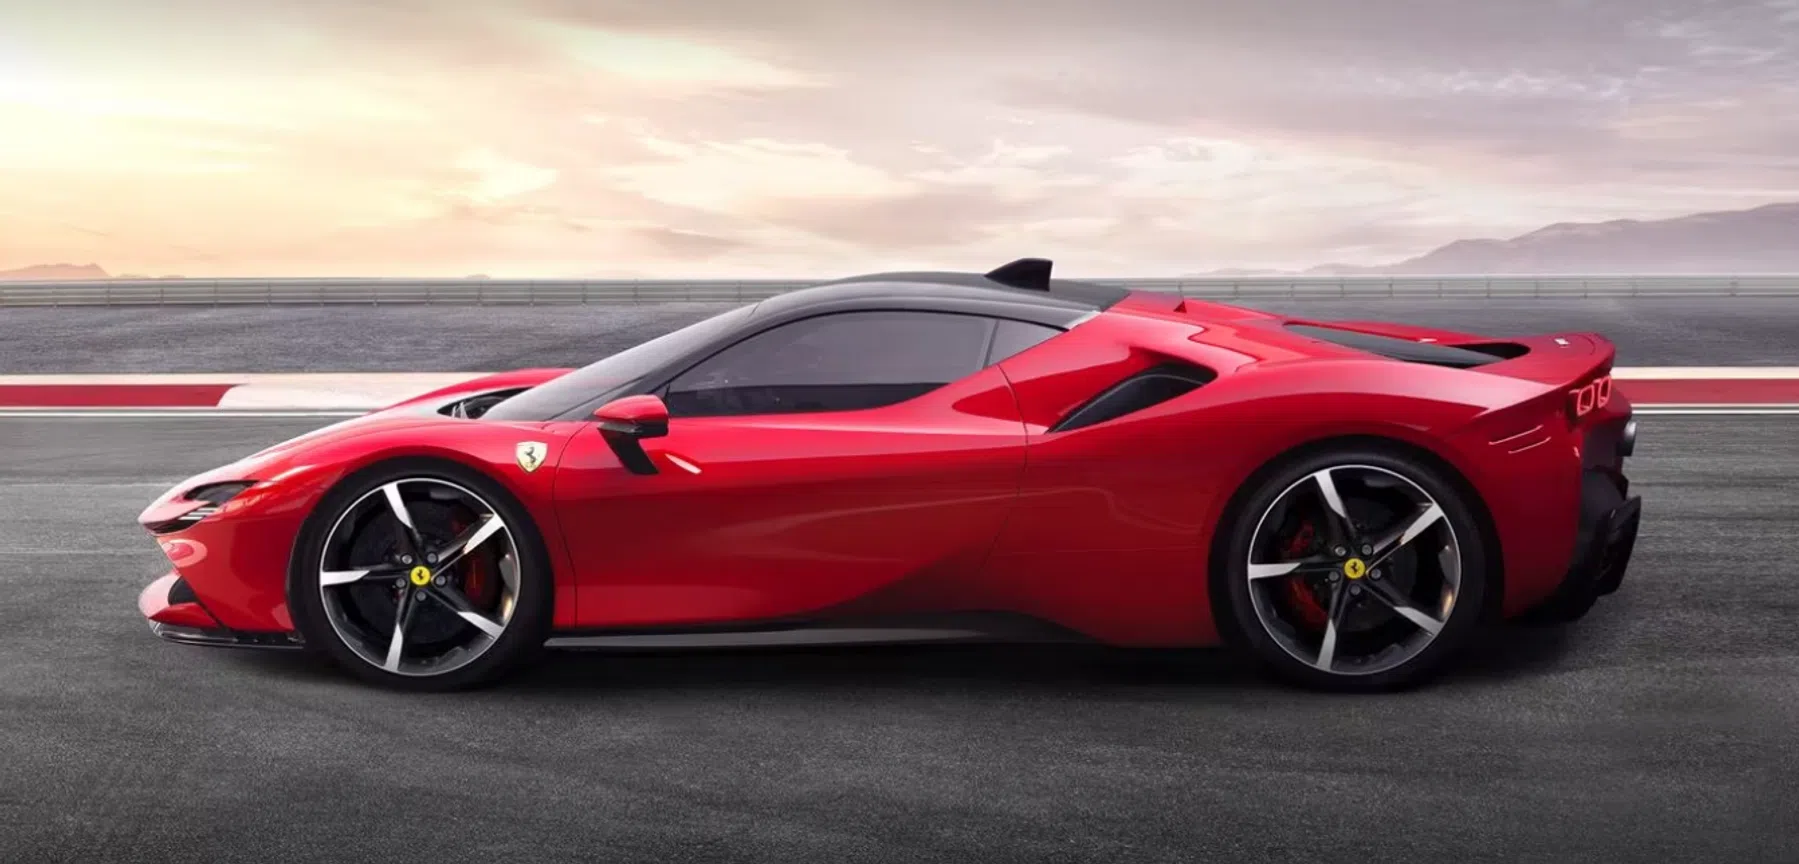 De elektrische Ferrari krijgt unieke geluiden om 'emoties op te wekken'